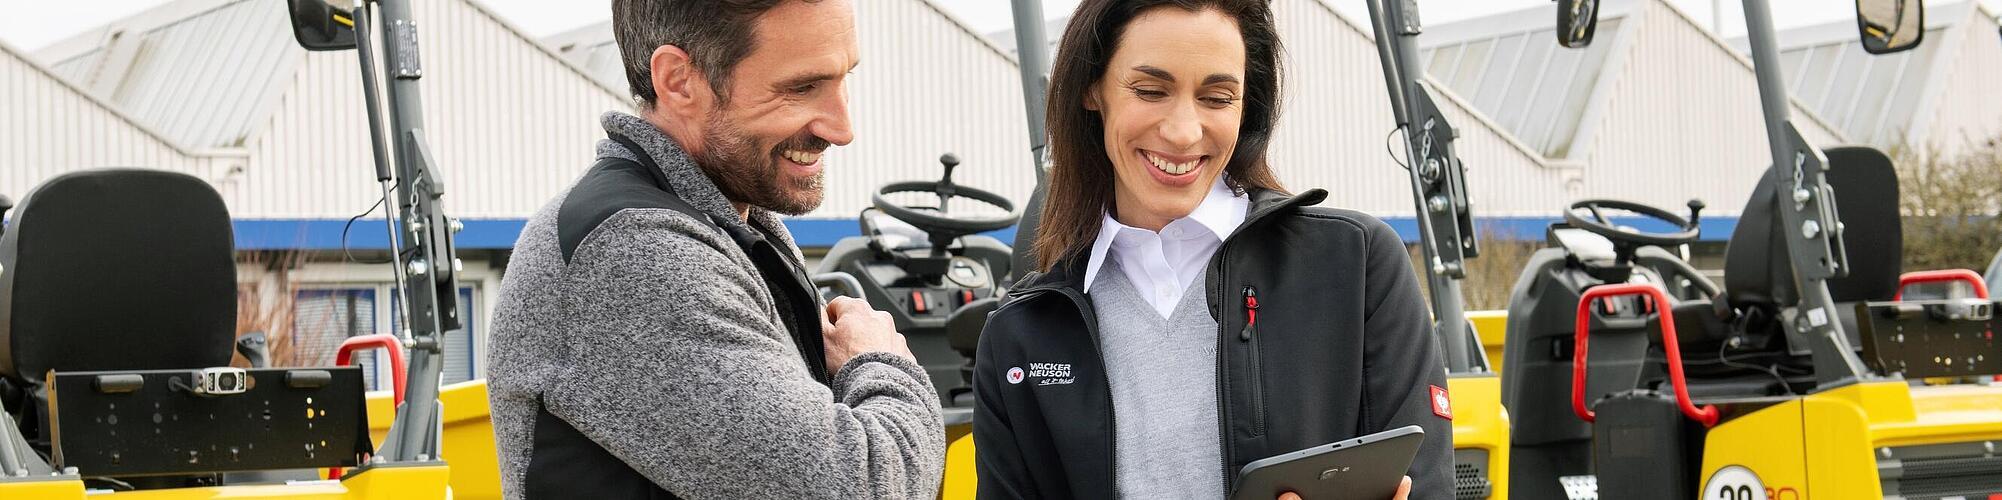 Funcionária da Wacker Neuson sorrindo com tablet aconselhando cliente sorridente em frente ao equipamento de construção da Wacker Neuson.